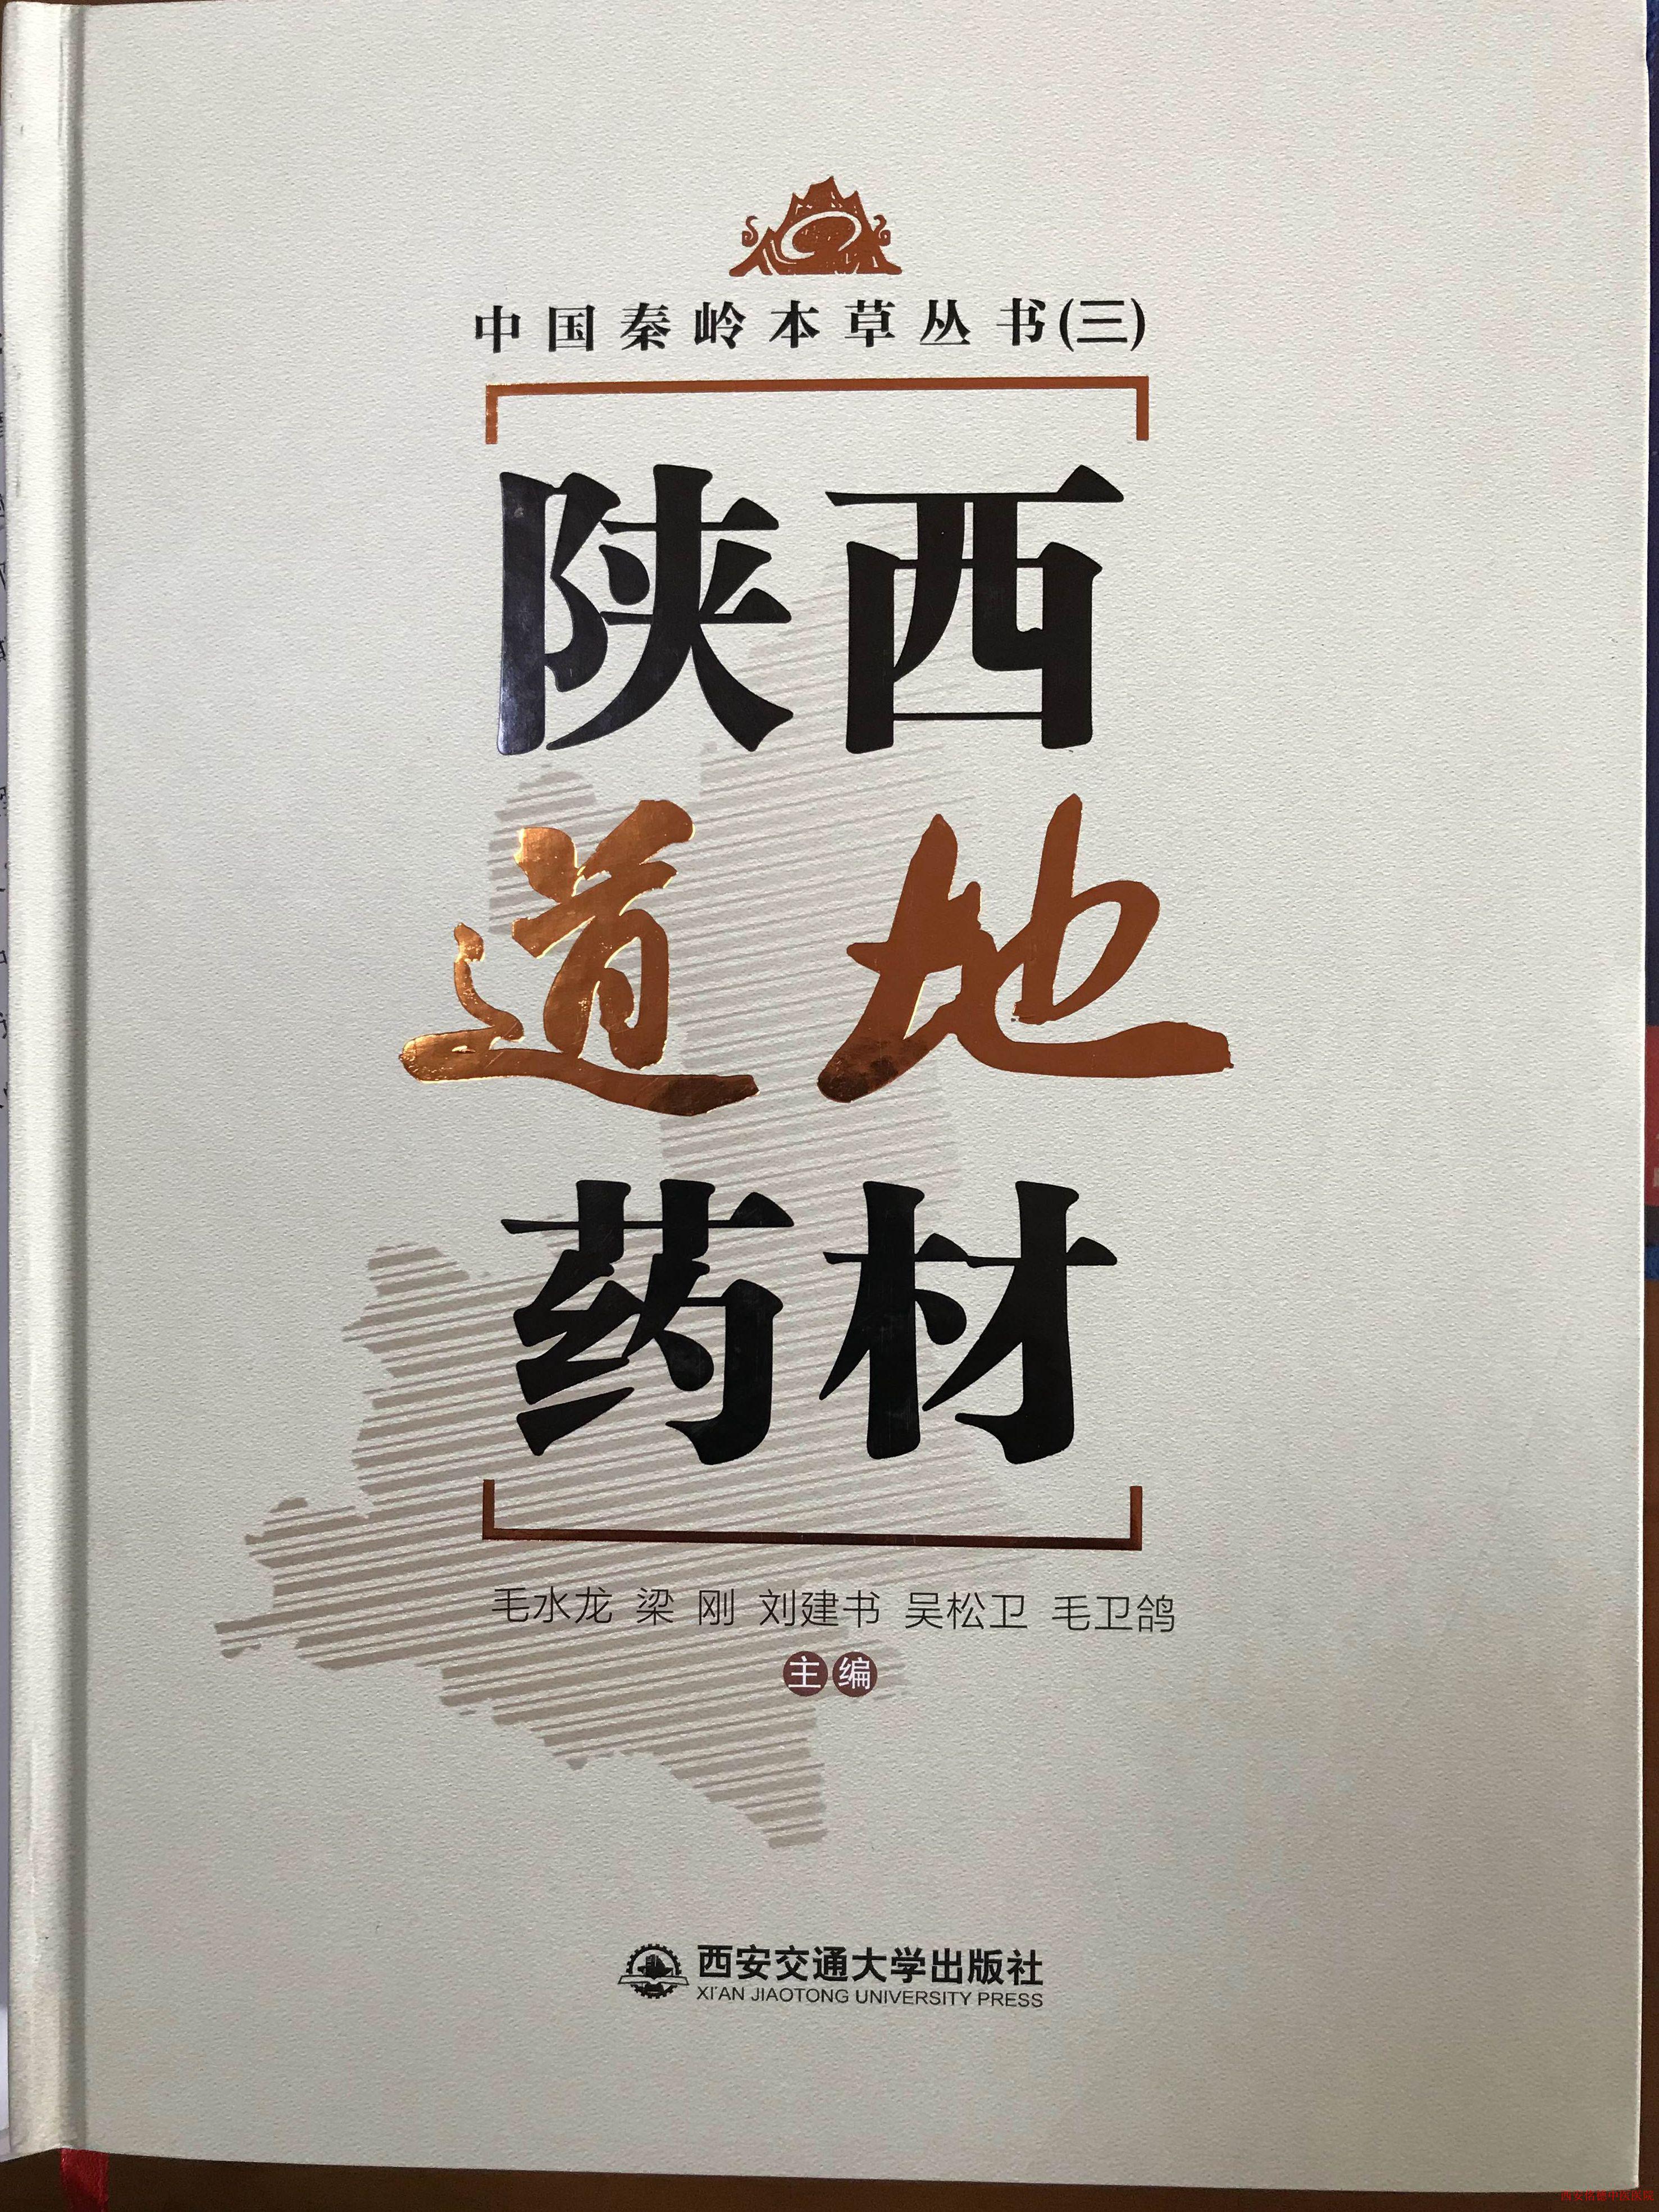 毛水龙历时5年新书《陕西道地药材》出版发行